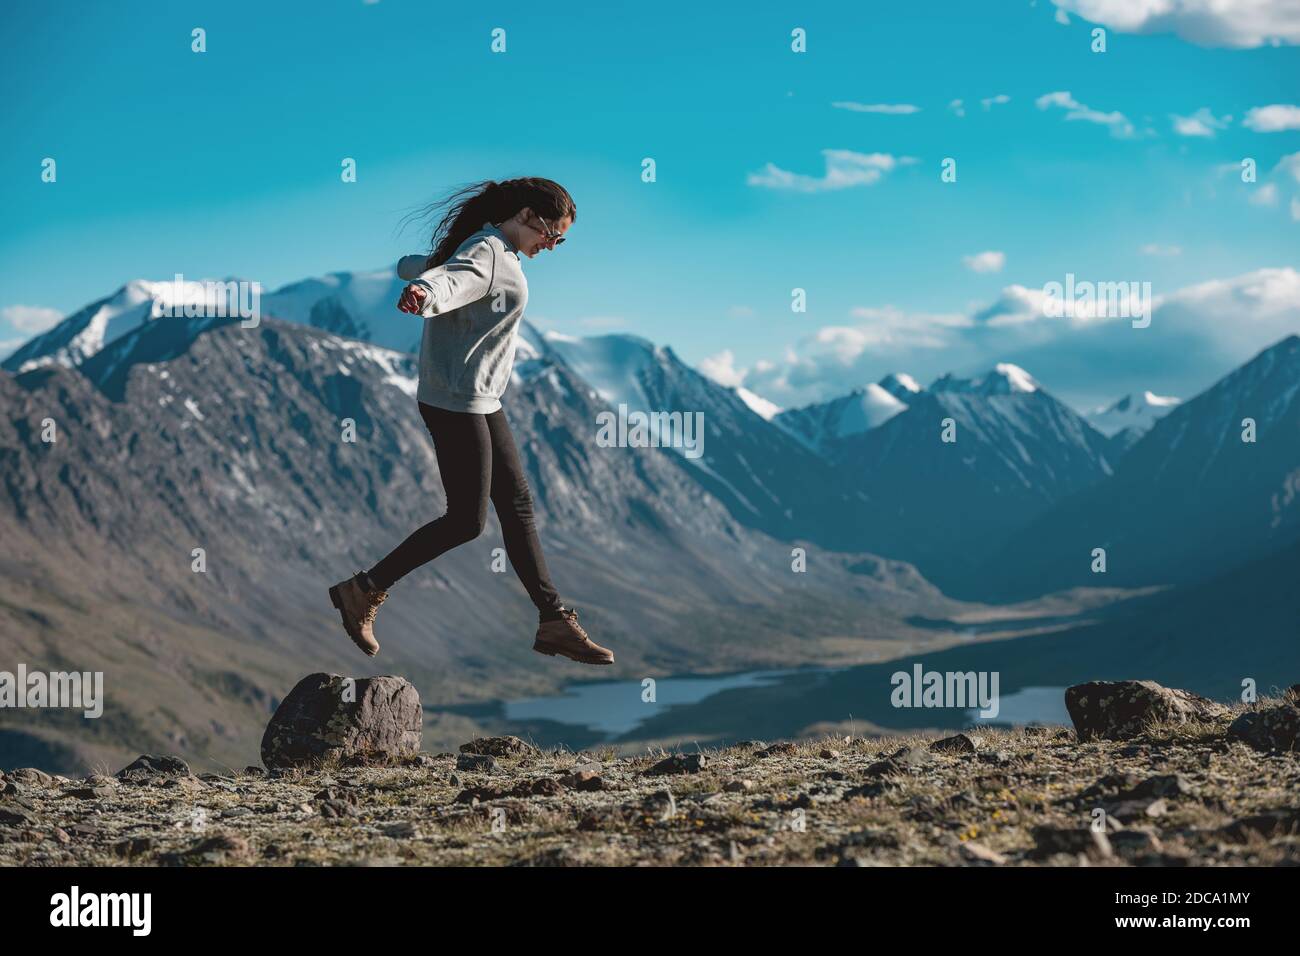 Une jeune fille sportive mince a du plaisir et saute sur la pierre dans les hautes montagnes. Concept de tourisme actif Banque D'Images